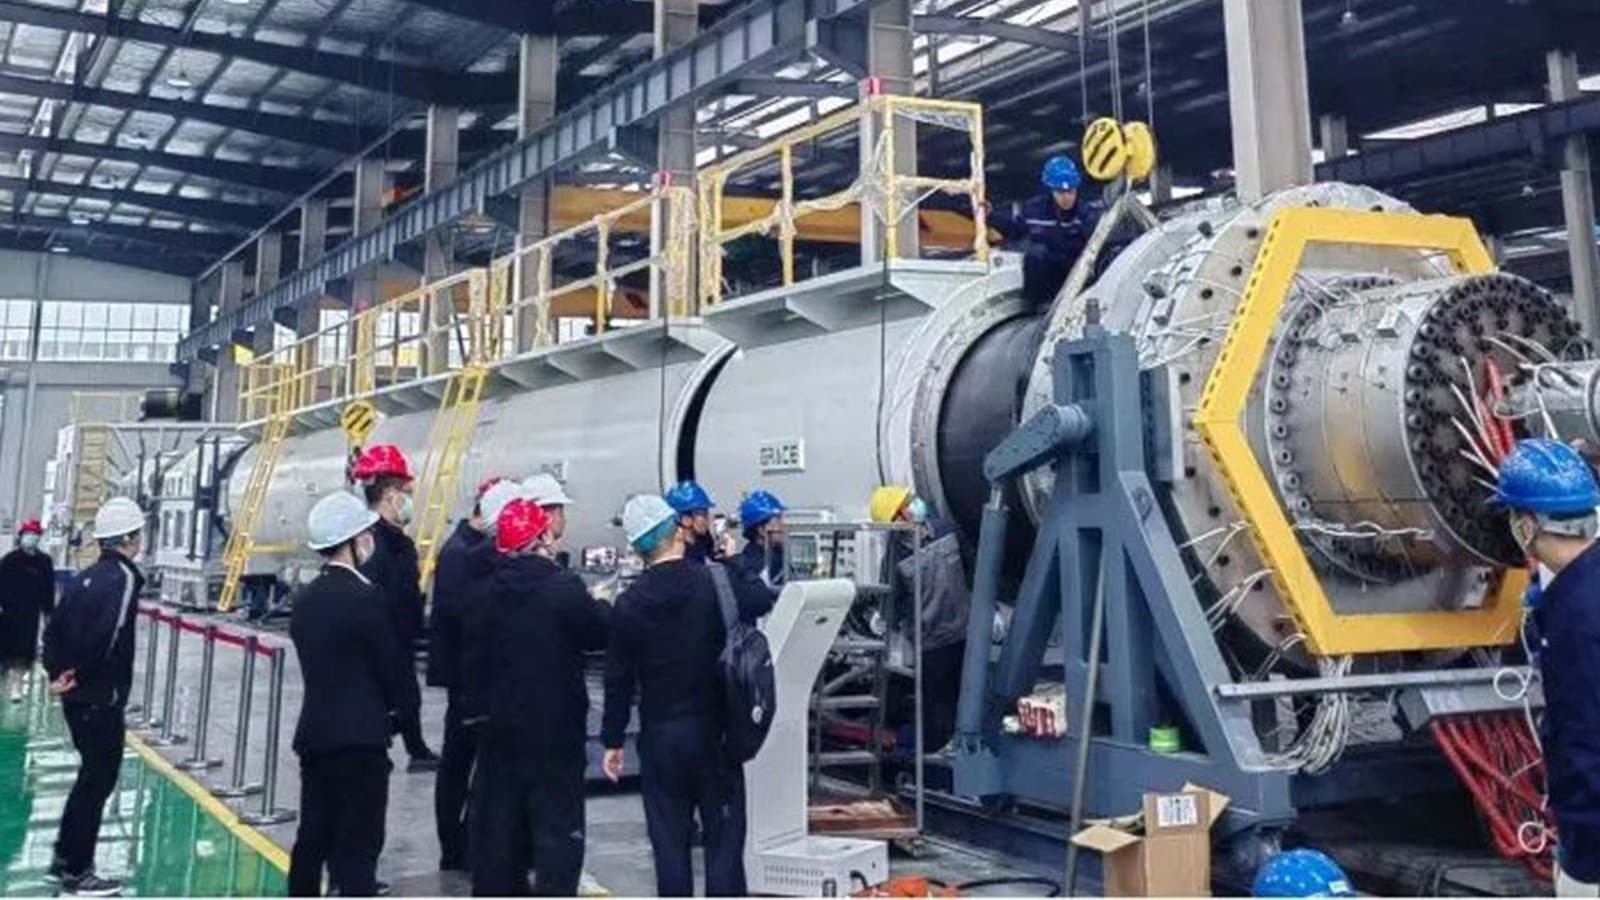 Pagbukas sa Pabrika nga Adlaw - Ang Grace HDPE 710mm-1600mm pipe extrusion production line nagsugod